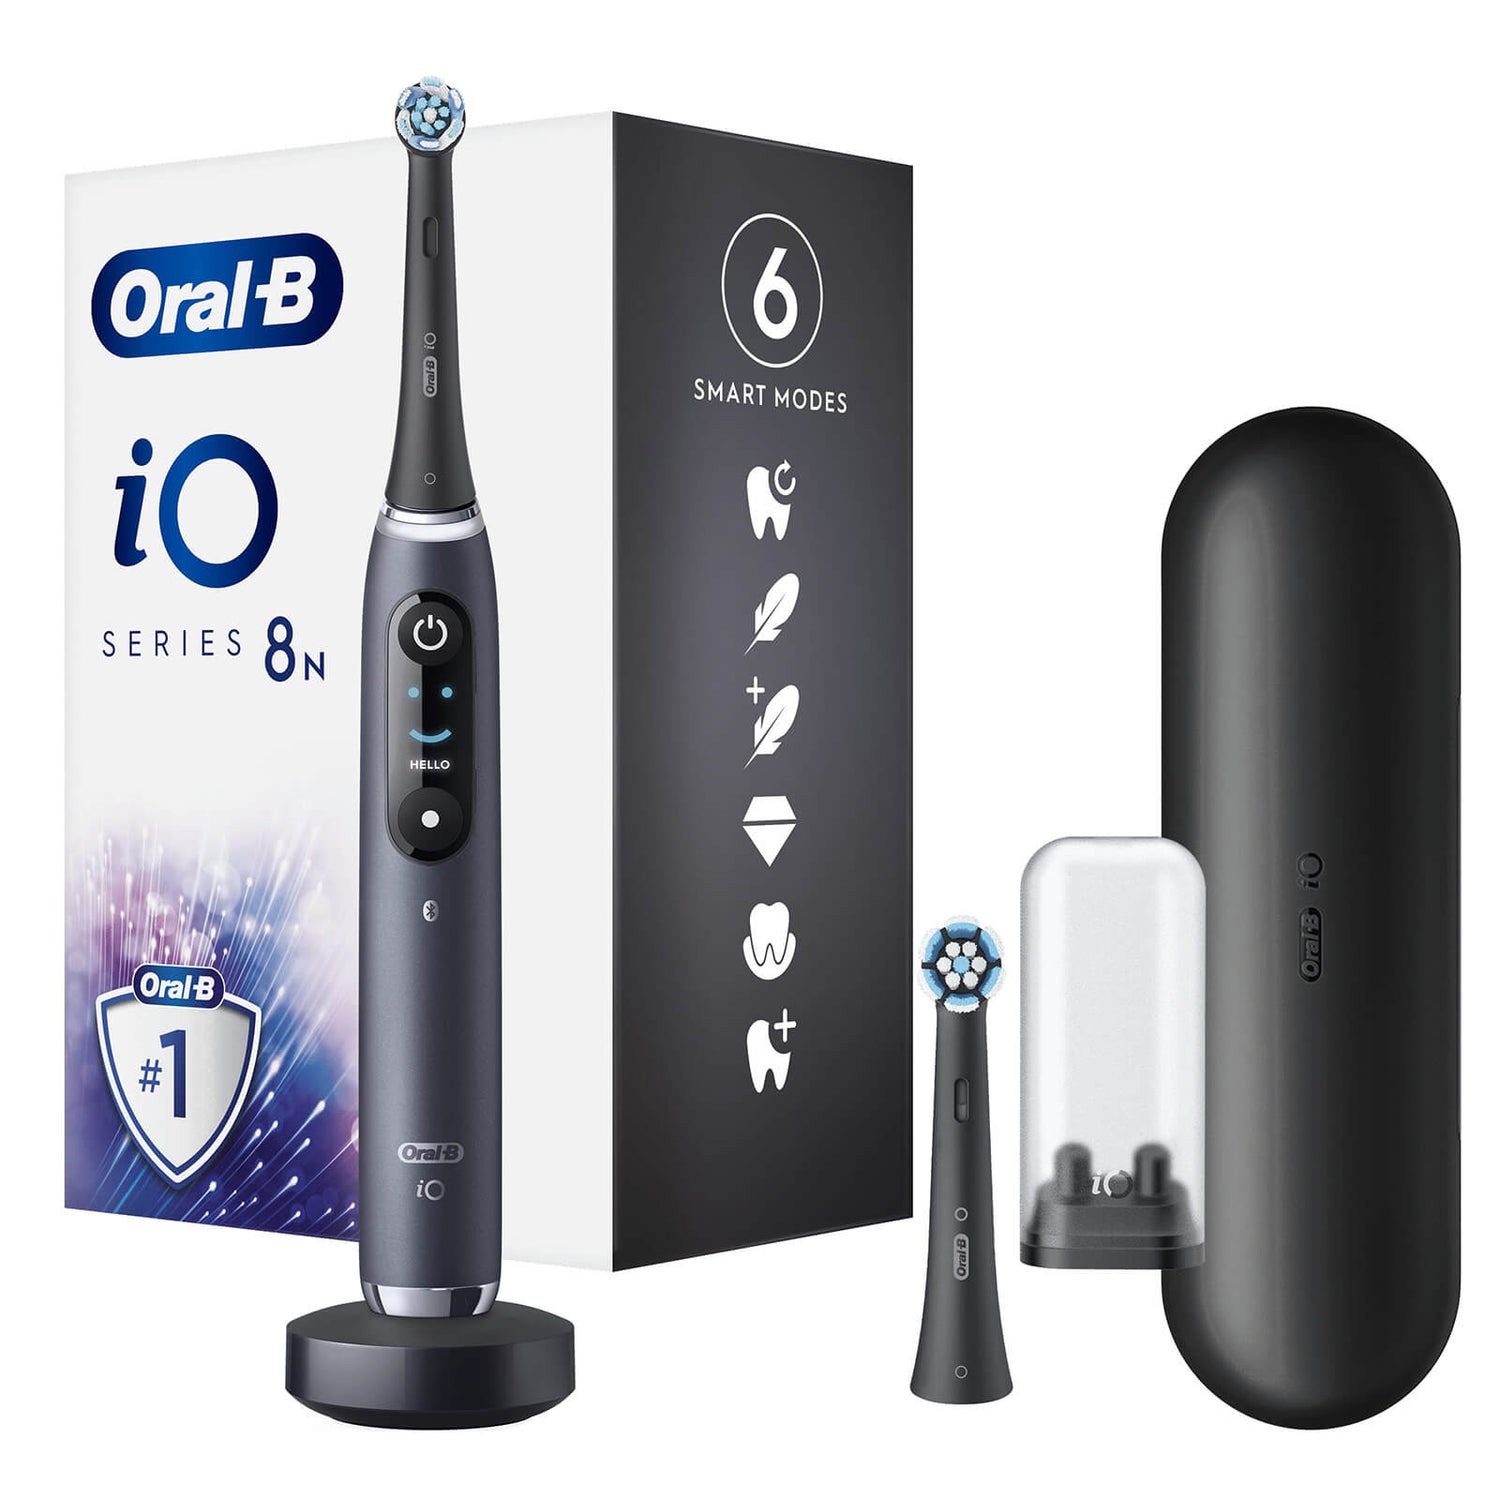 Oral-B iO Series 8N Black Elektrische Tandenborstel